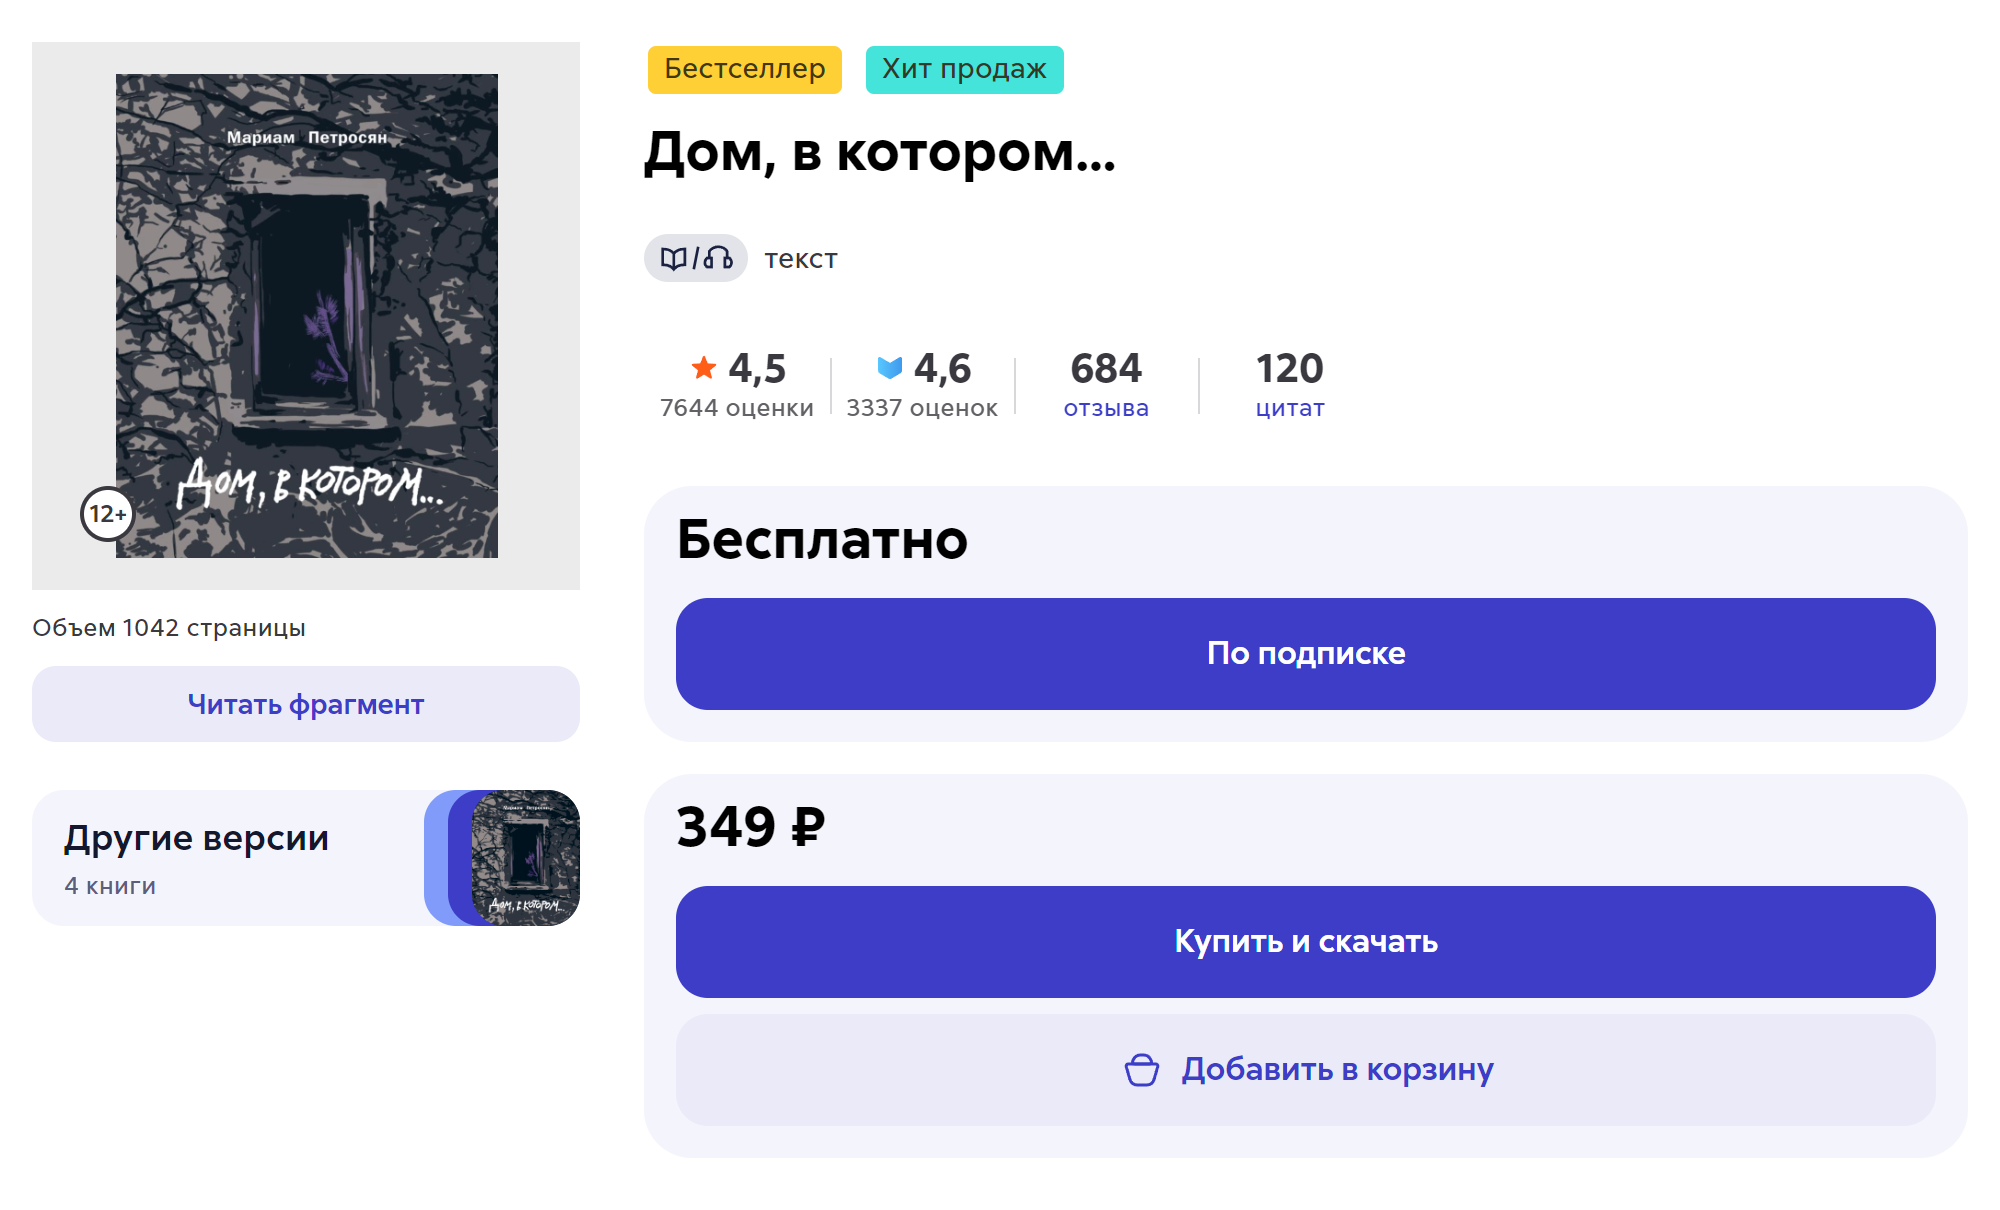 Эта же книга в электронном виде стоит 349 ₽. Источник: litres.ru